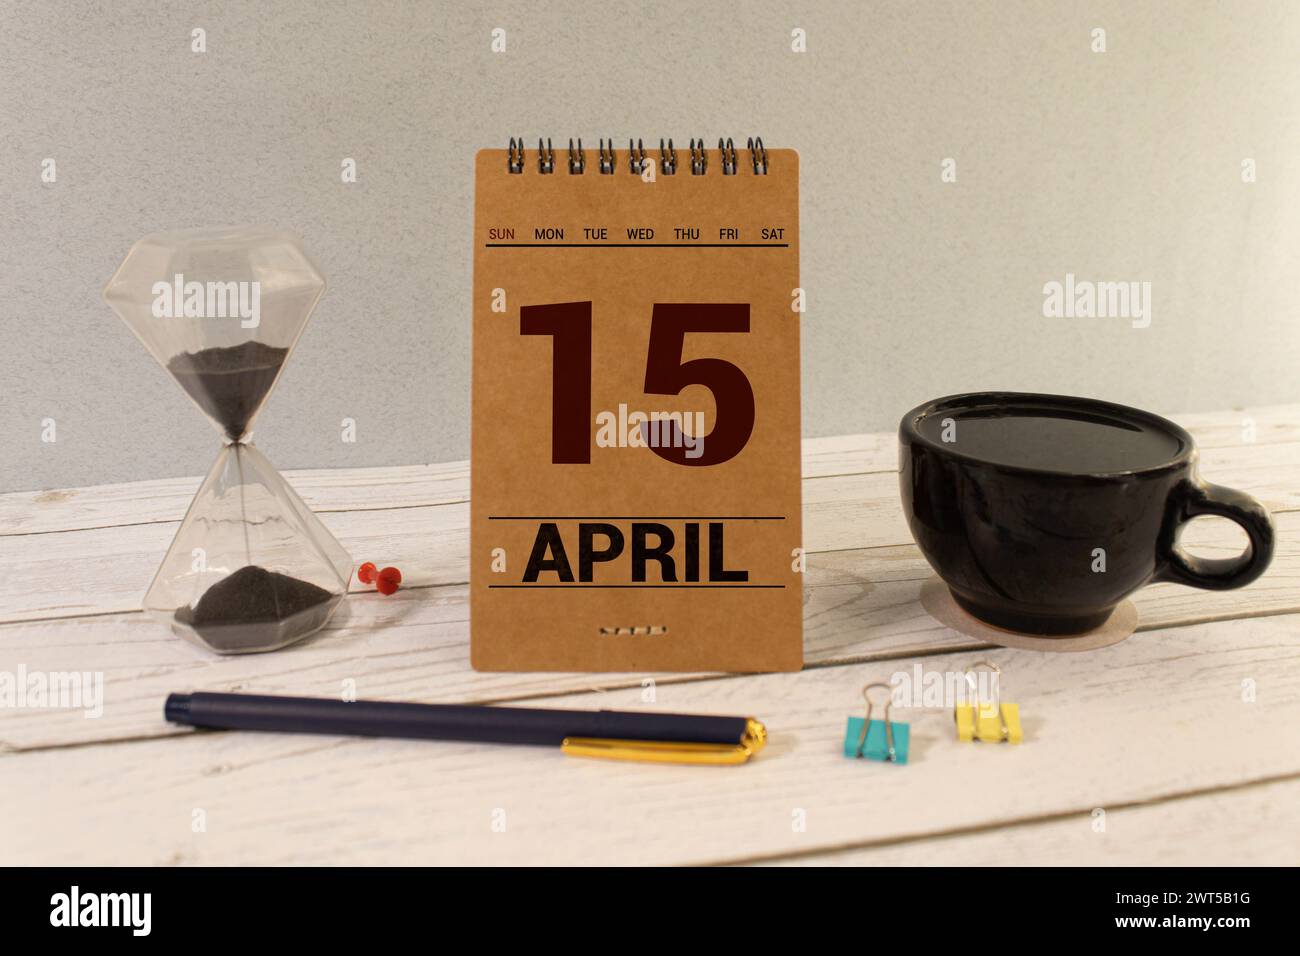 15 avril. Jour 15 du mois, calendrier sur table en bois et fond turquoise. Heure du printemps, espace vide pour le texte Banque D'Images